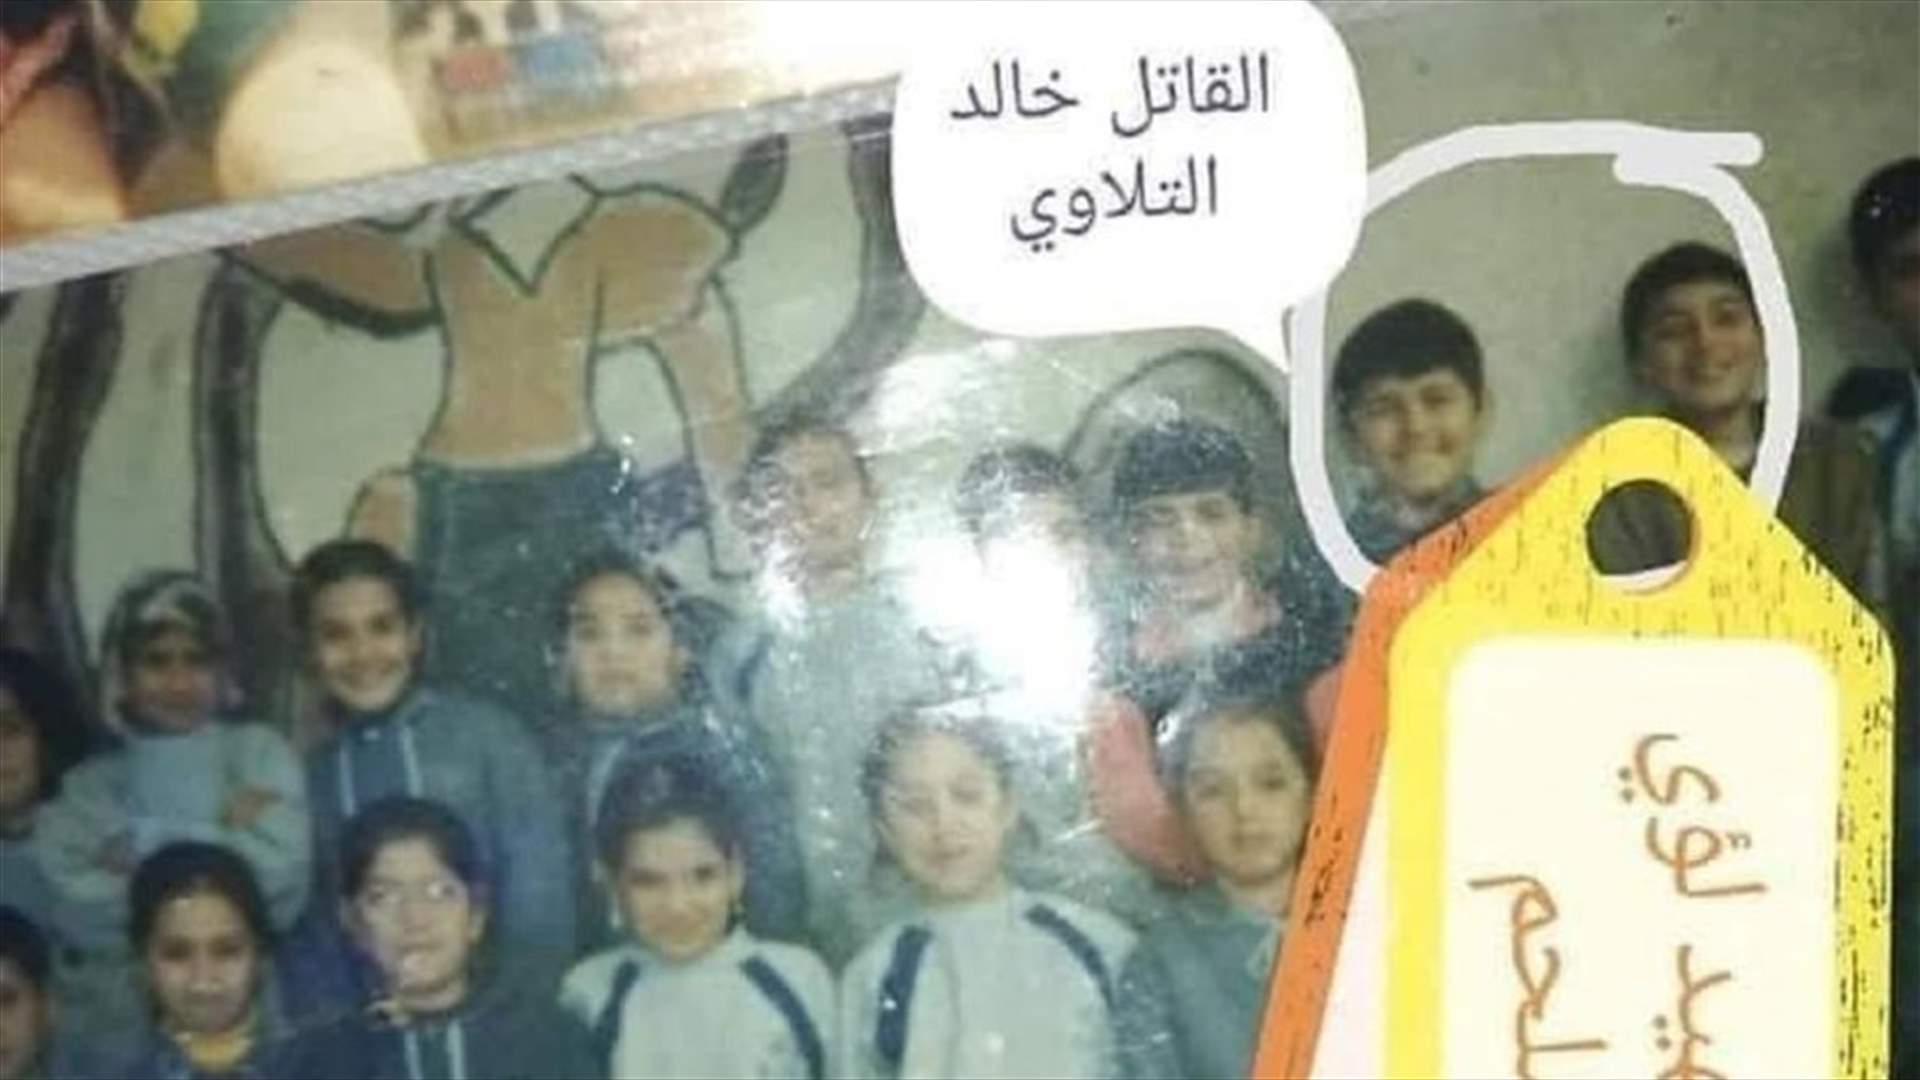 صورة تجمع القاتل خالد التلاوي والشهيد لؤي ملحم من أيام مقاعد الدراسة...